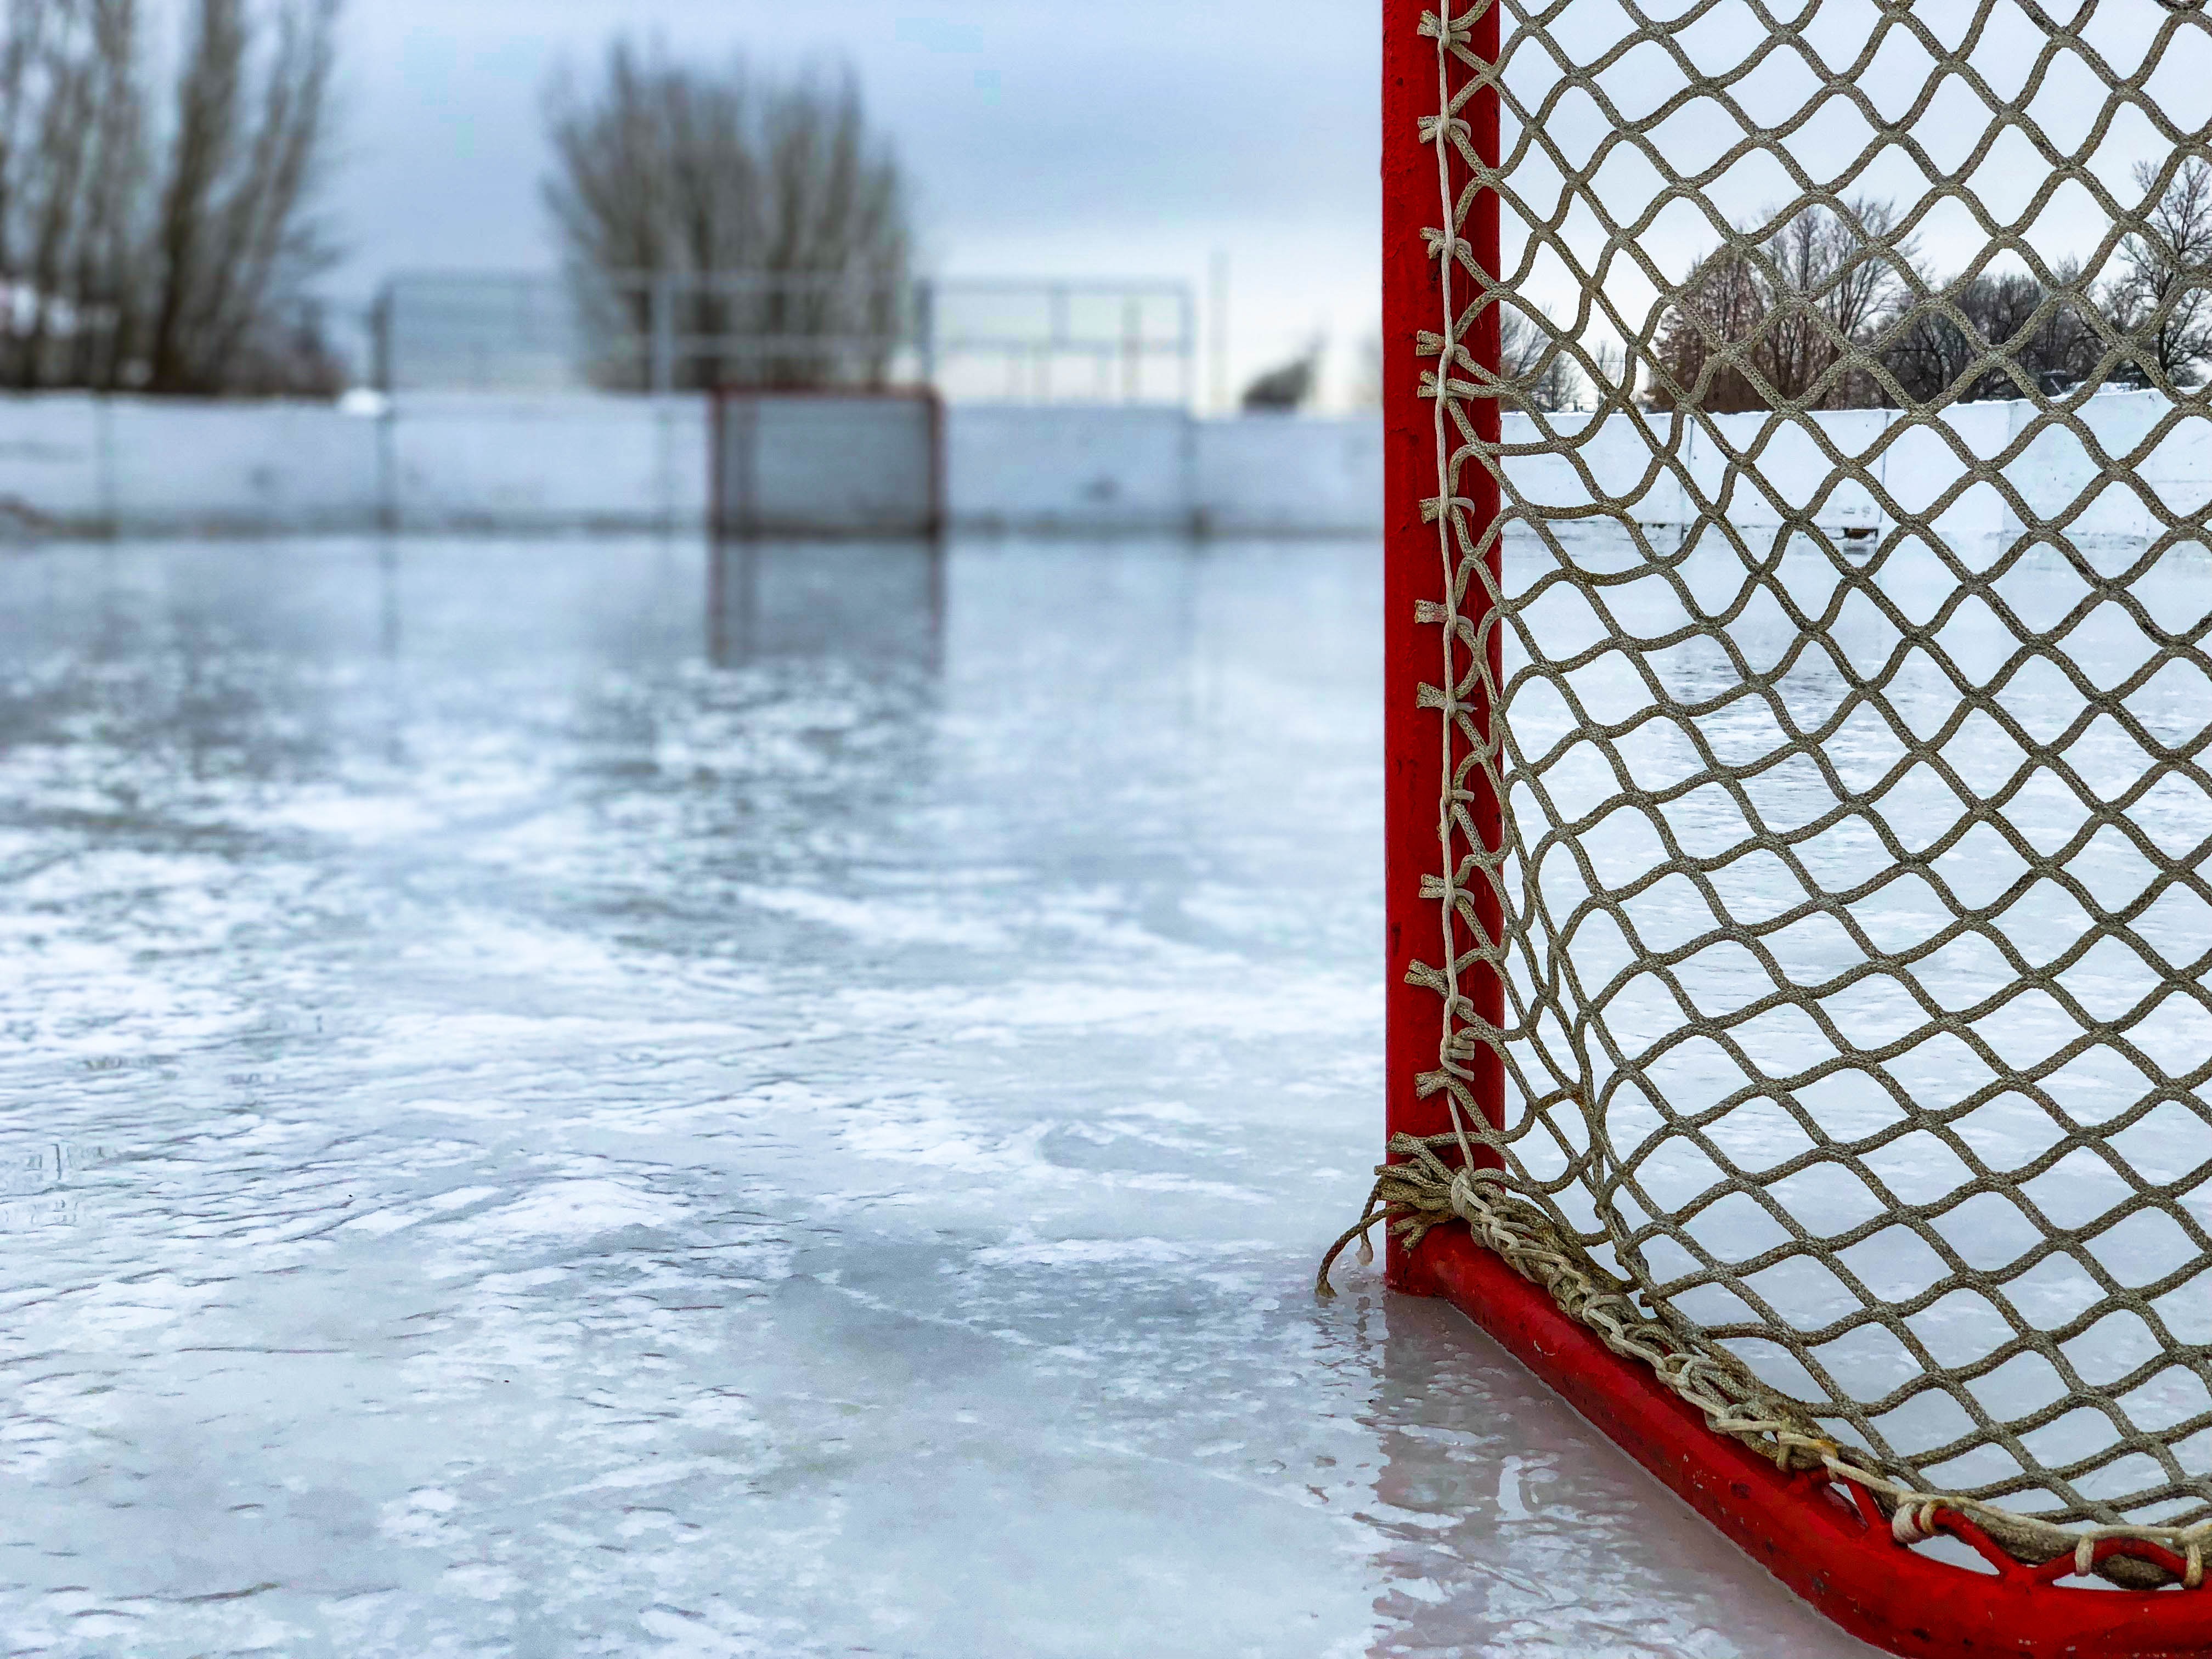 Skating rink with hockey net